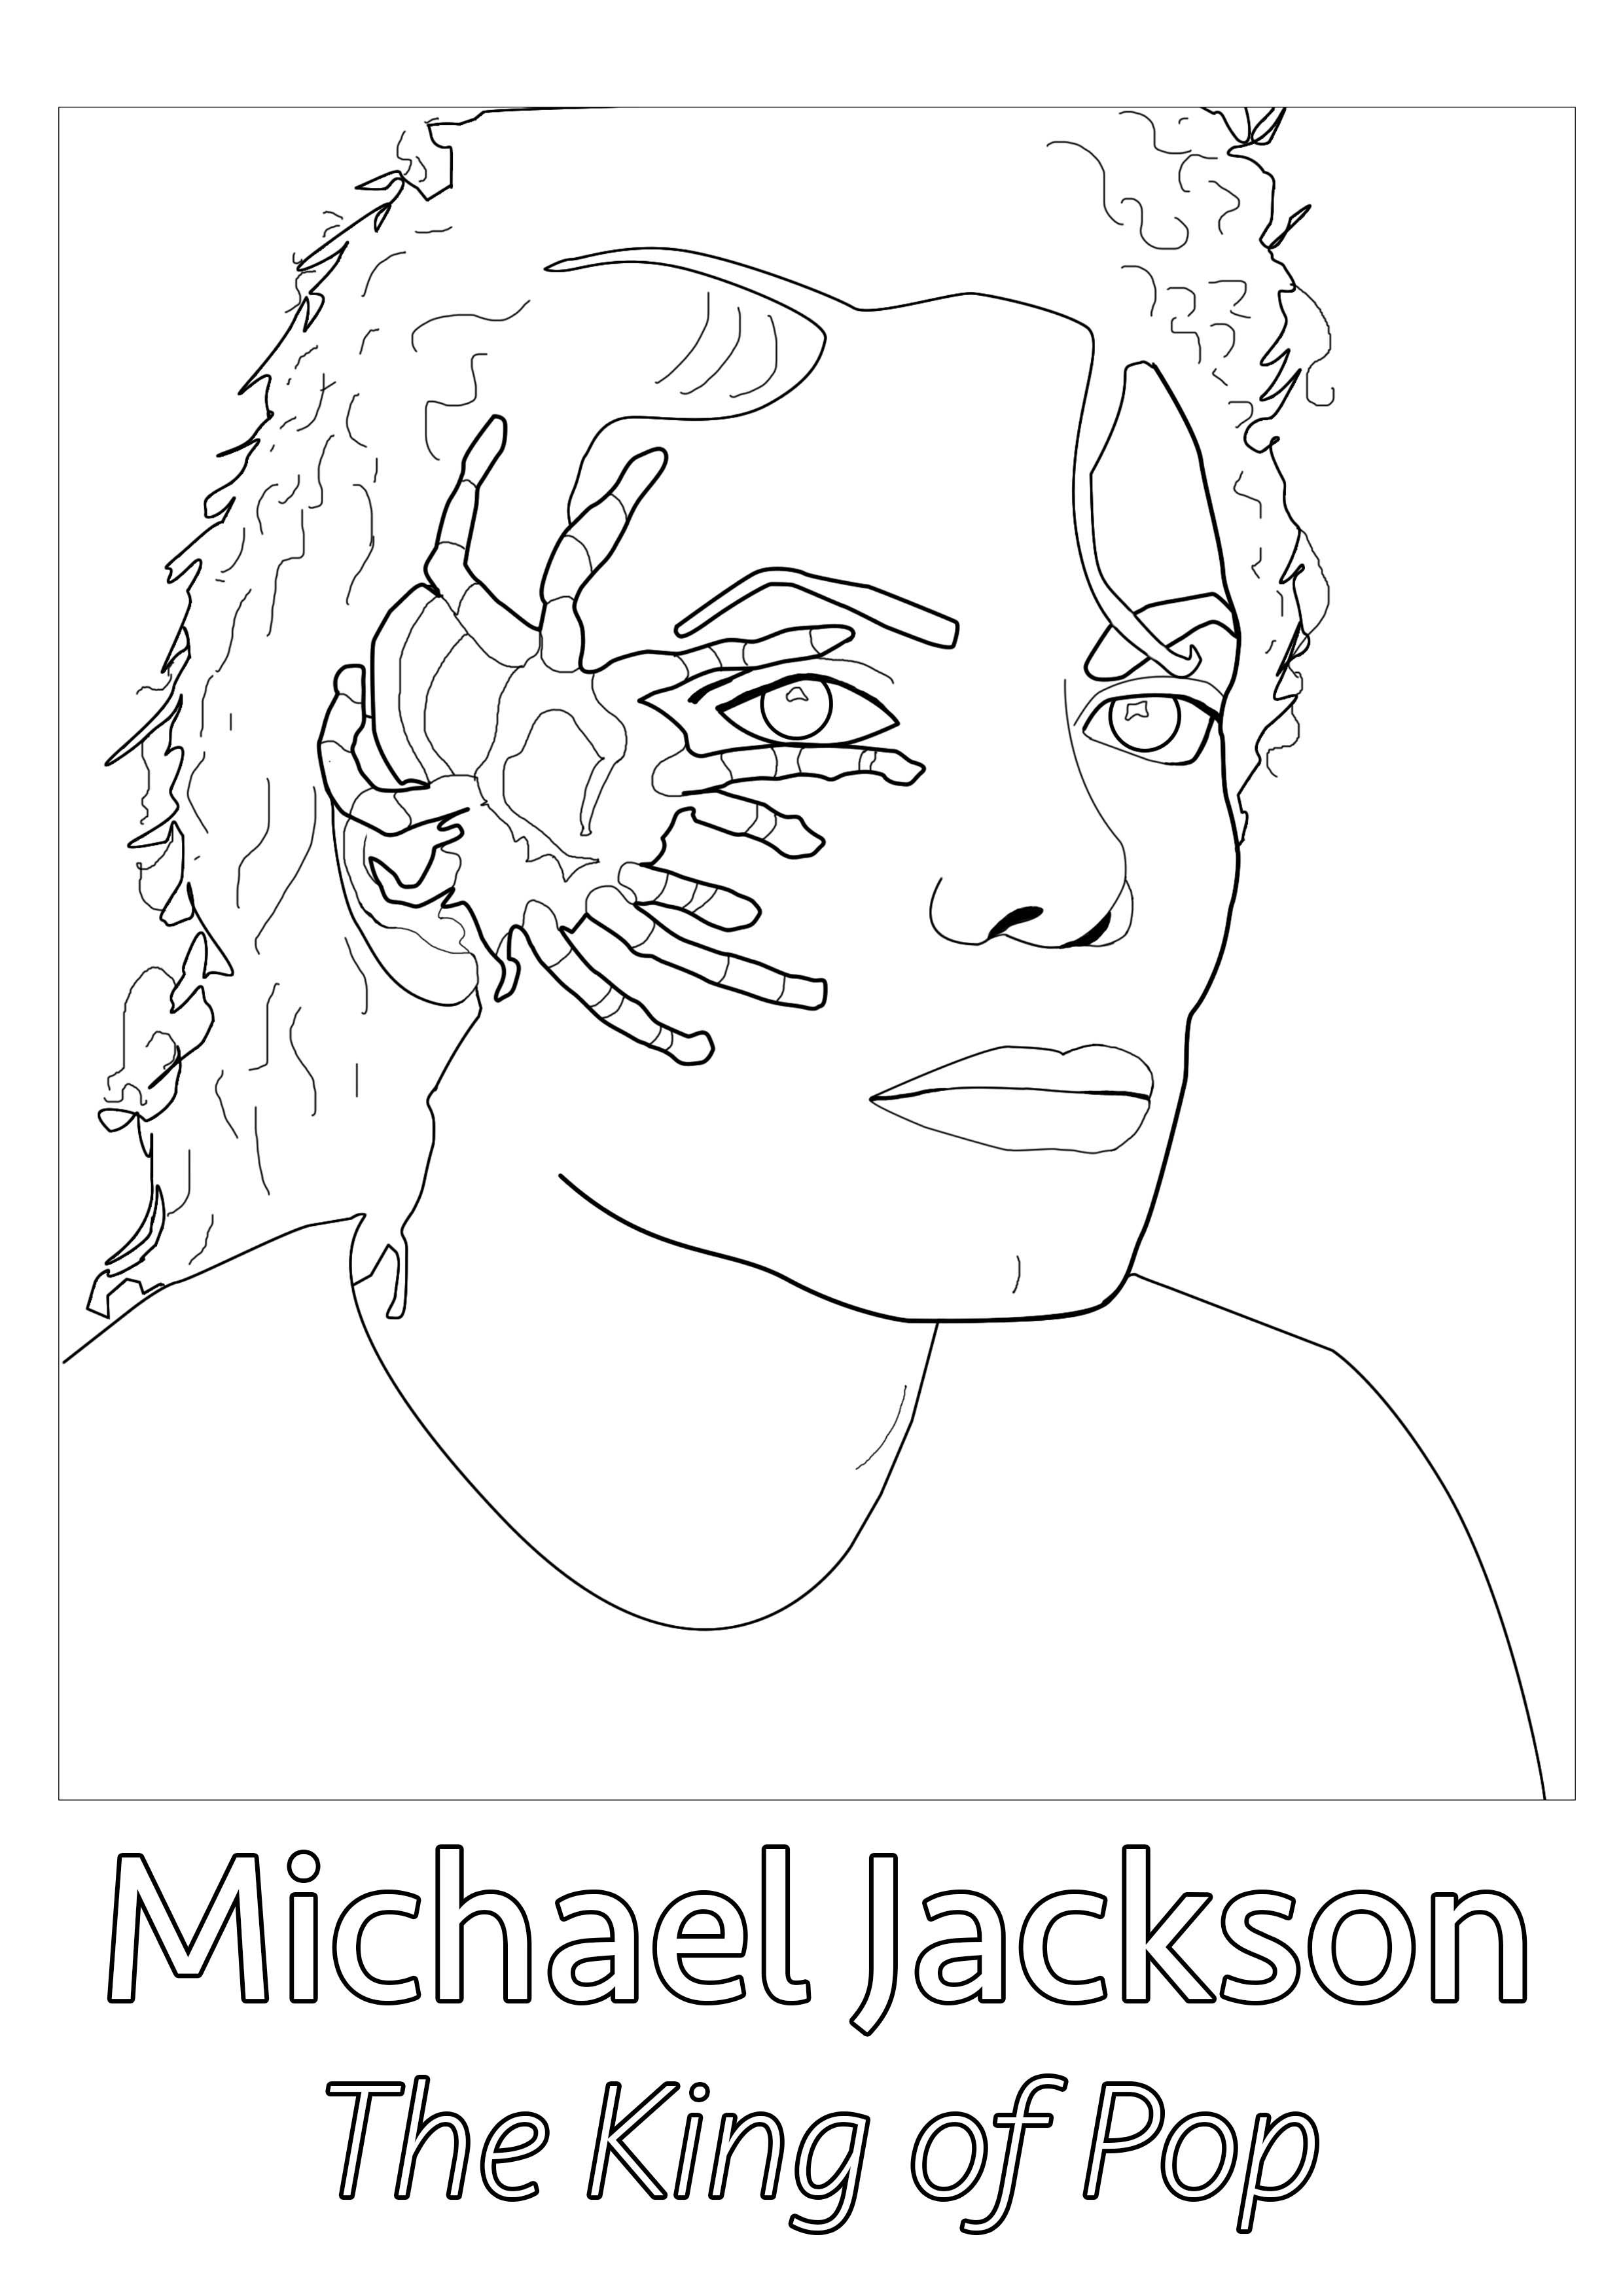 Création originale à partir d'une photographie rare de Michael Jackson et une araignée sur le visage (Greg Gorman - 1987)